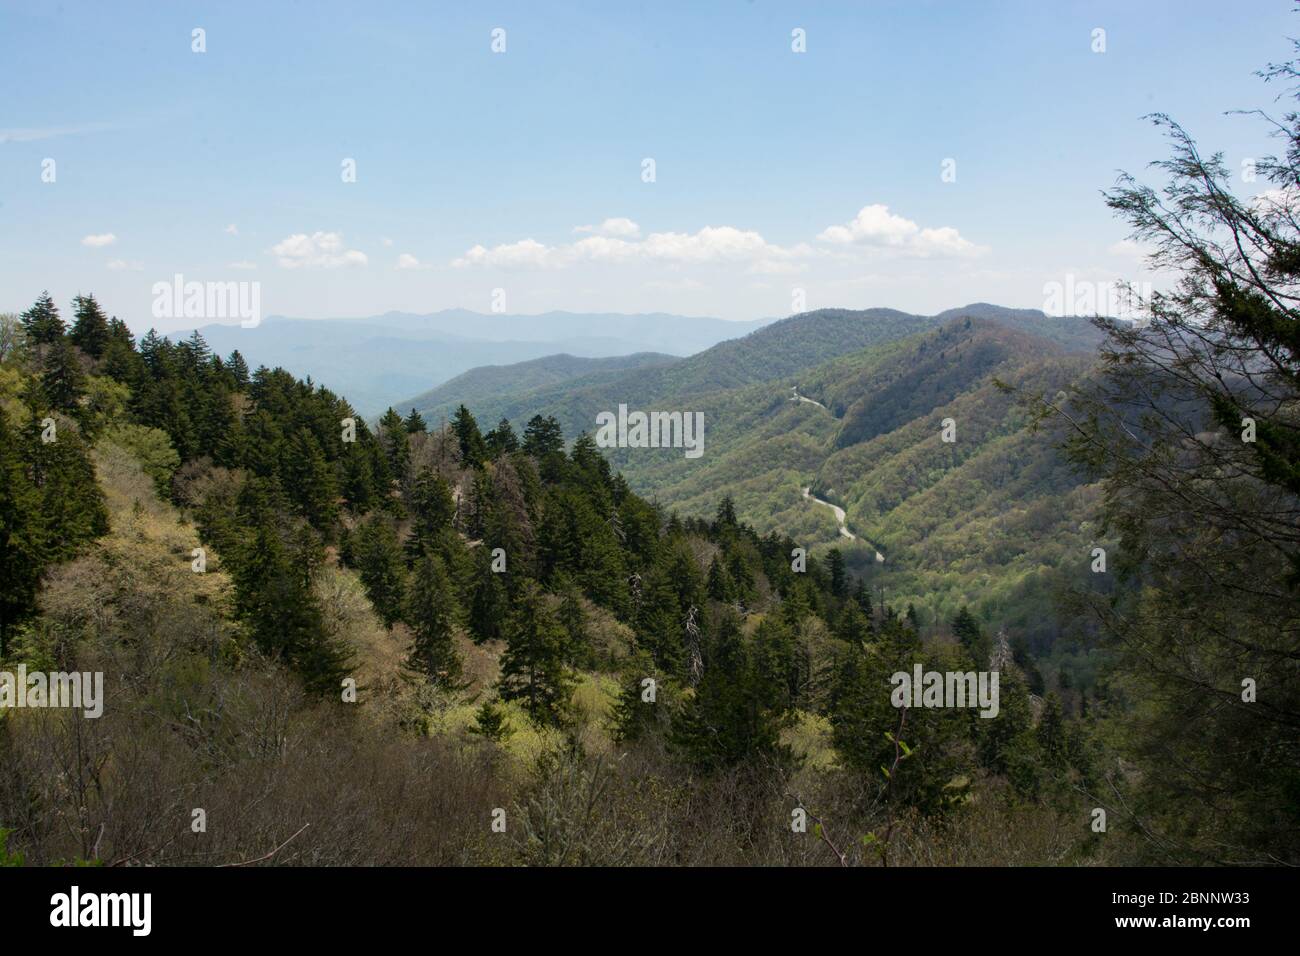 Newfound Gap, dans le parc national des Great Smoky Mountains, est un col de montagne offrant des vues et des vues panoramiques incroyables. Le sentier des Appalaches passe également par. Banque D'Images